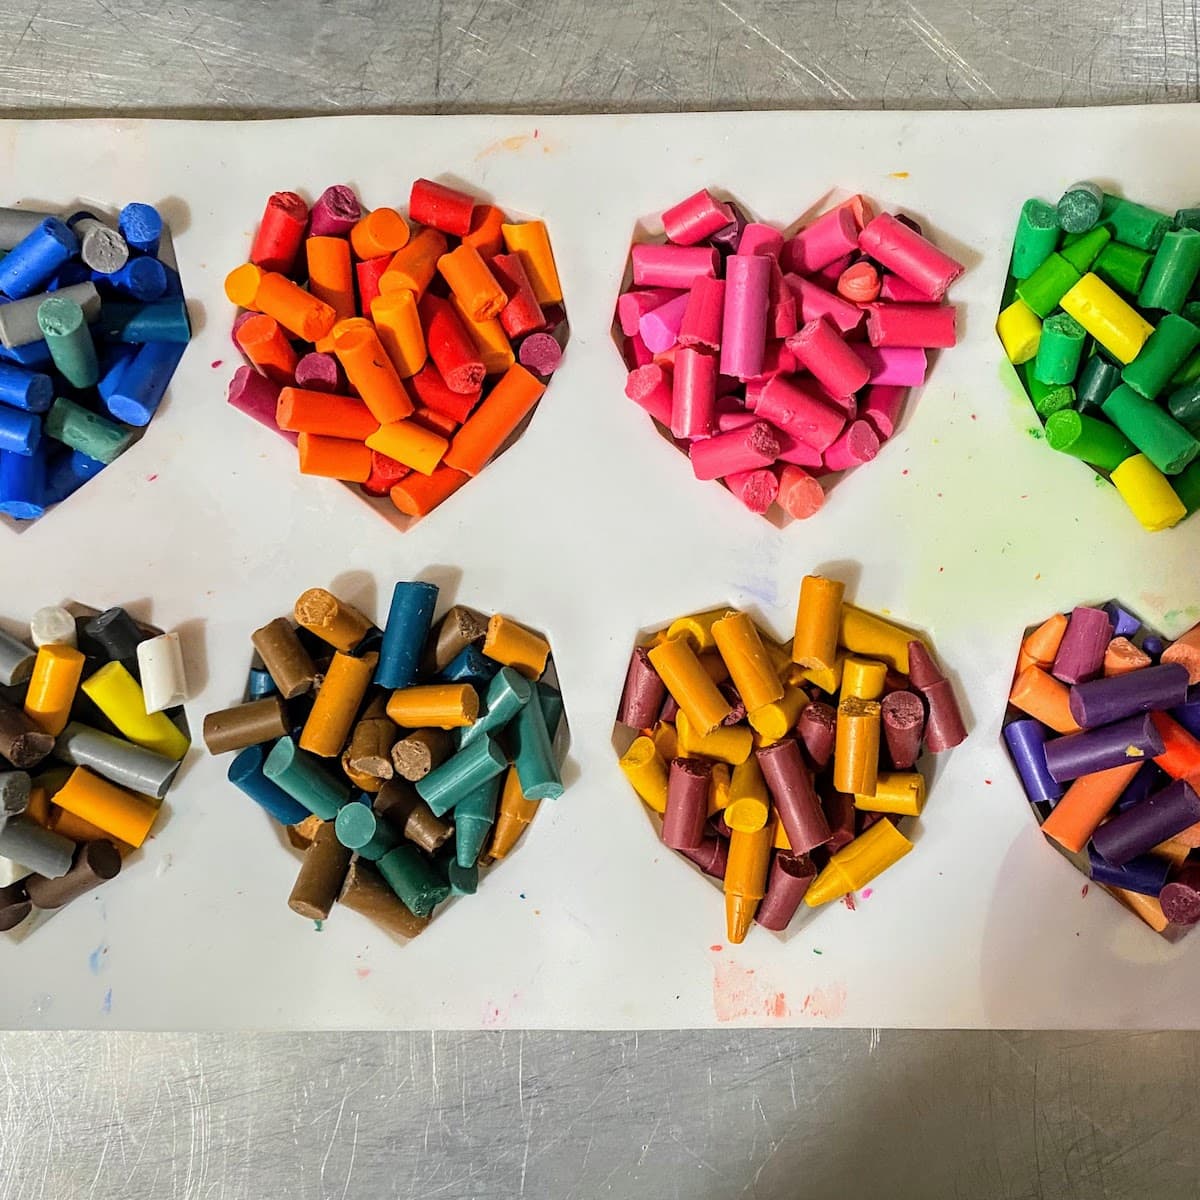 rainbow crayon pieces in baking mold